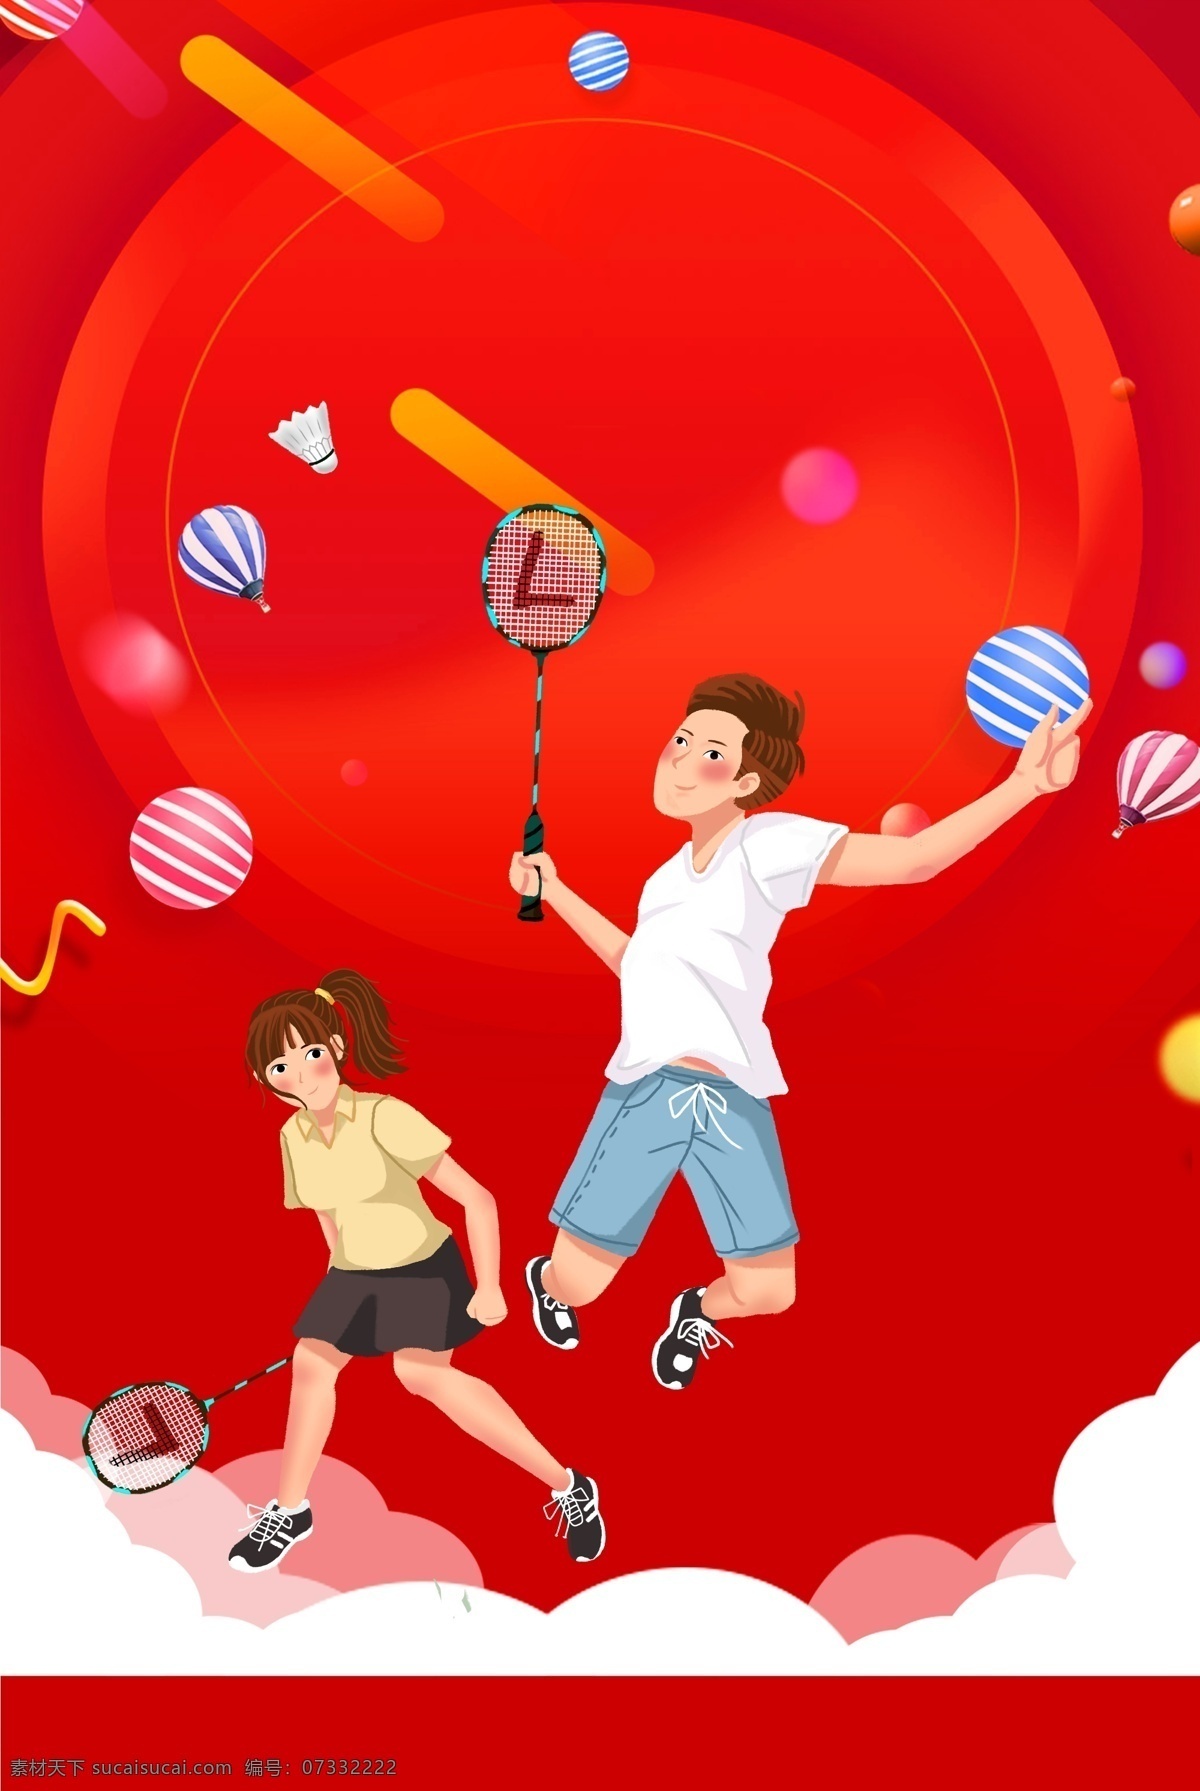 全民 羽毛球运动 红色 背景 羽毛球 运动 健康 健身 气球 圆点 简约 手绘